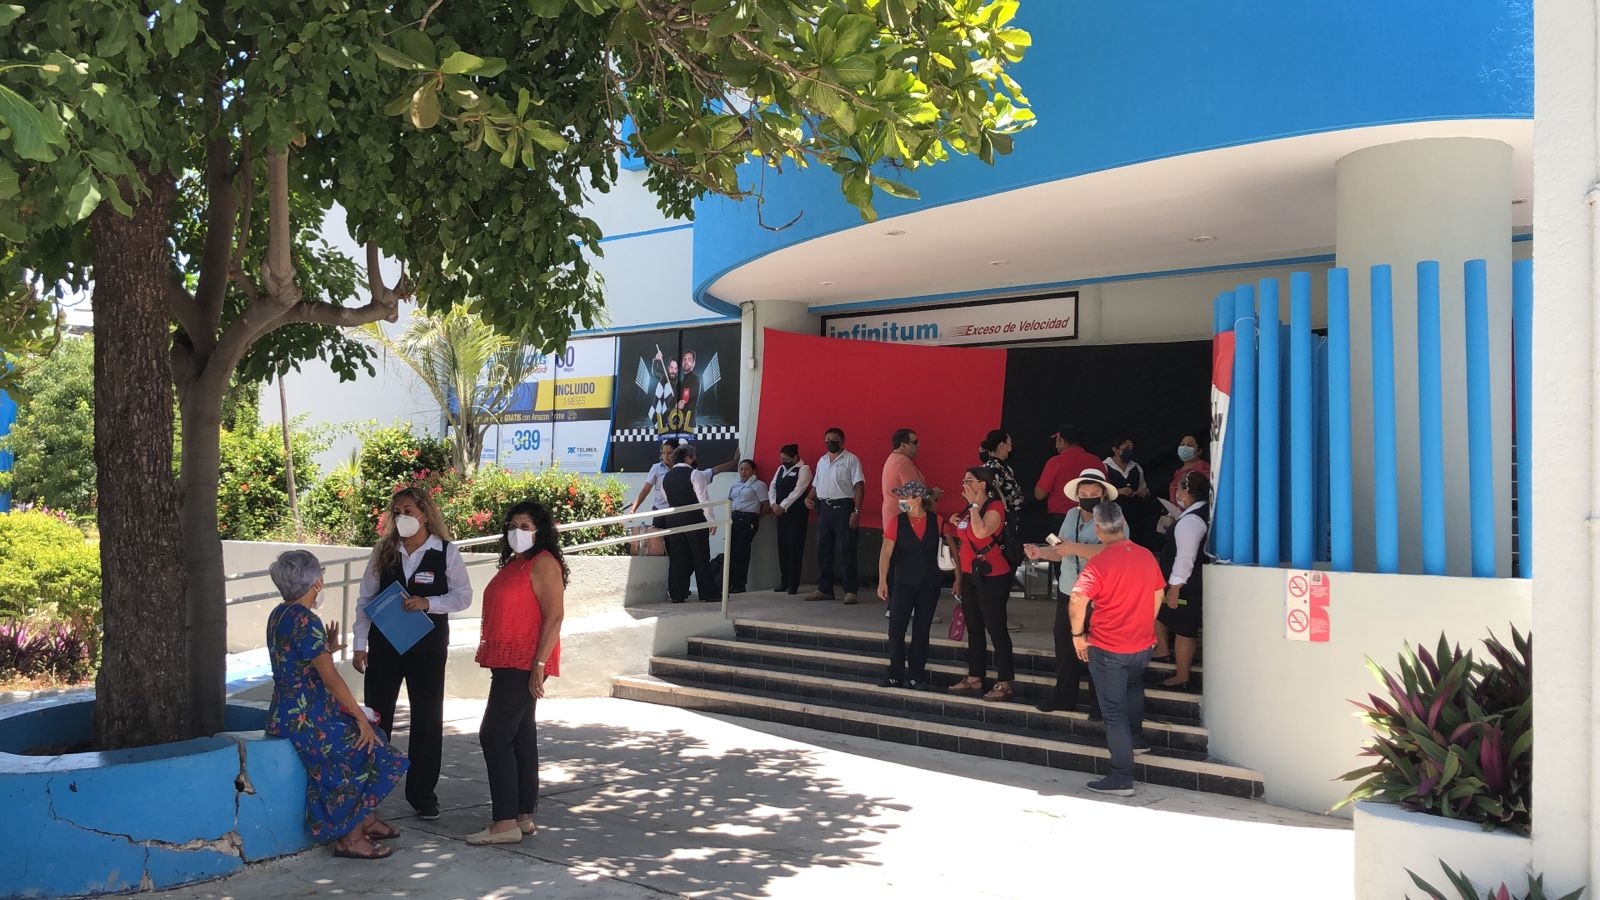 Los huelguistas en Cancún indicaron que en varias ocasiones Telmex prometió respetar los acuerdos del contrato colectivo de trabajo, pero que hasta ahora no ha respetado su palabra